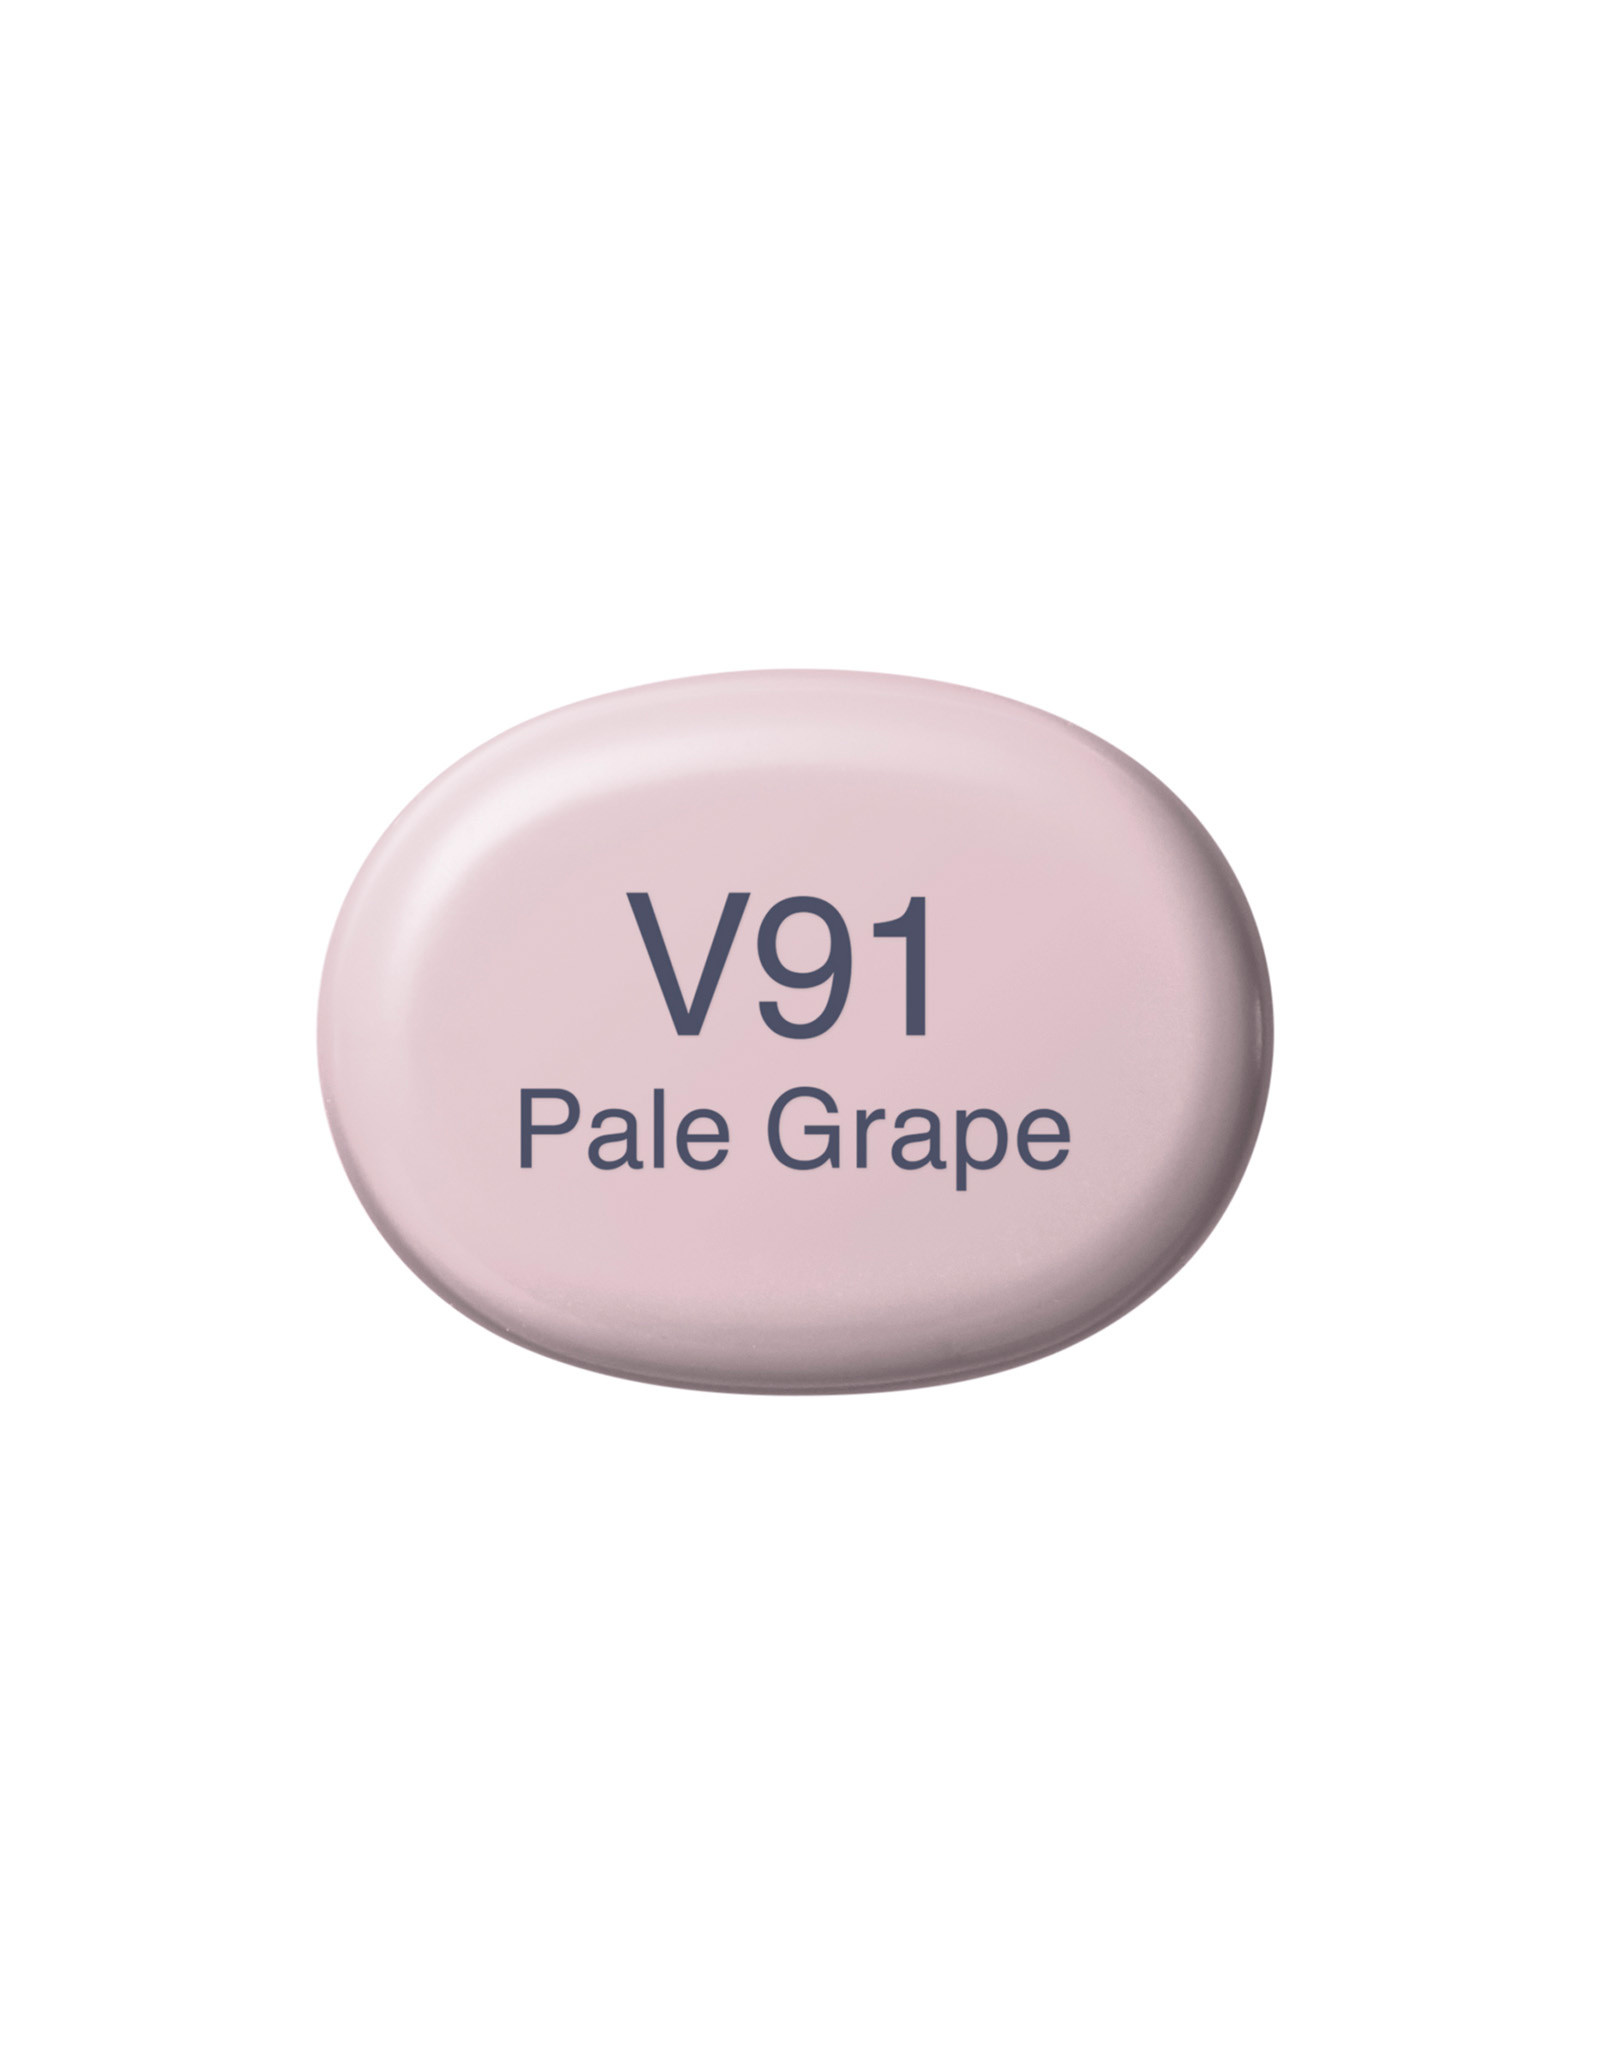 COPIC COPIC Sketch Marker V91 Pale Grape